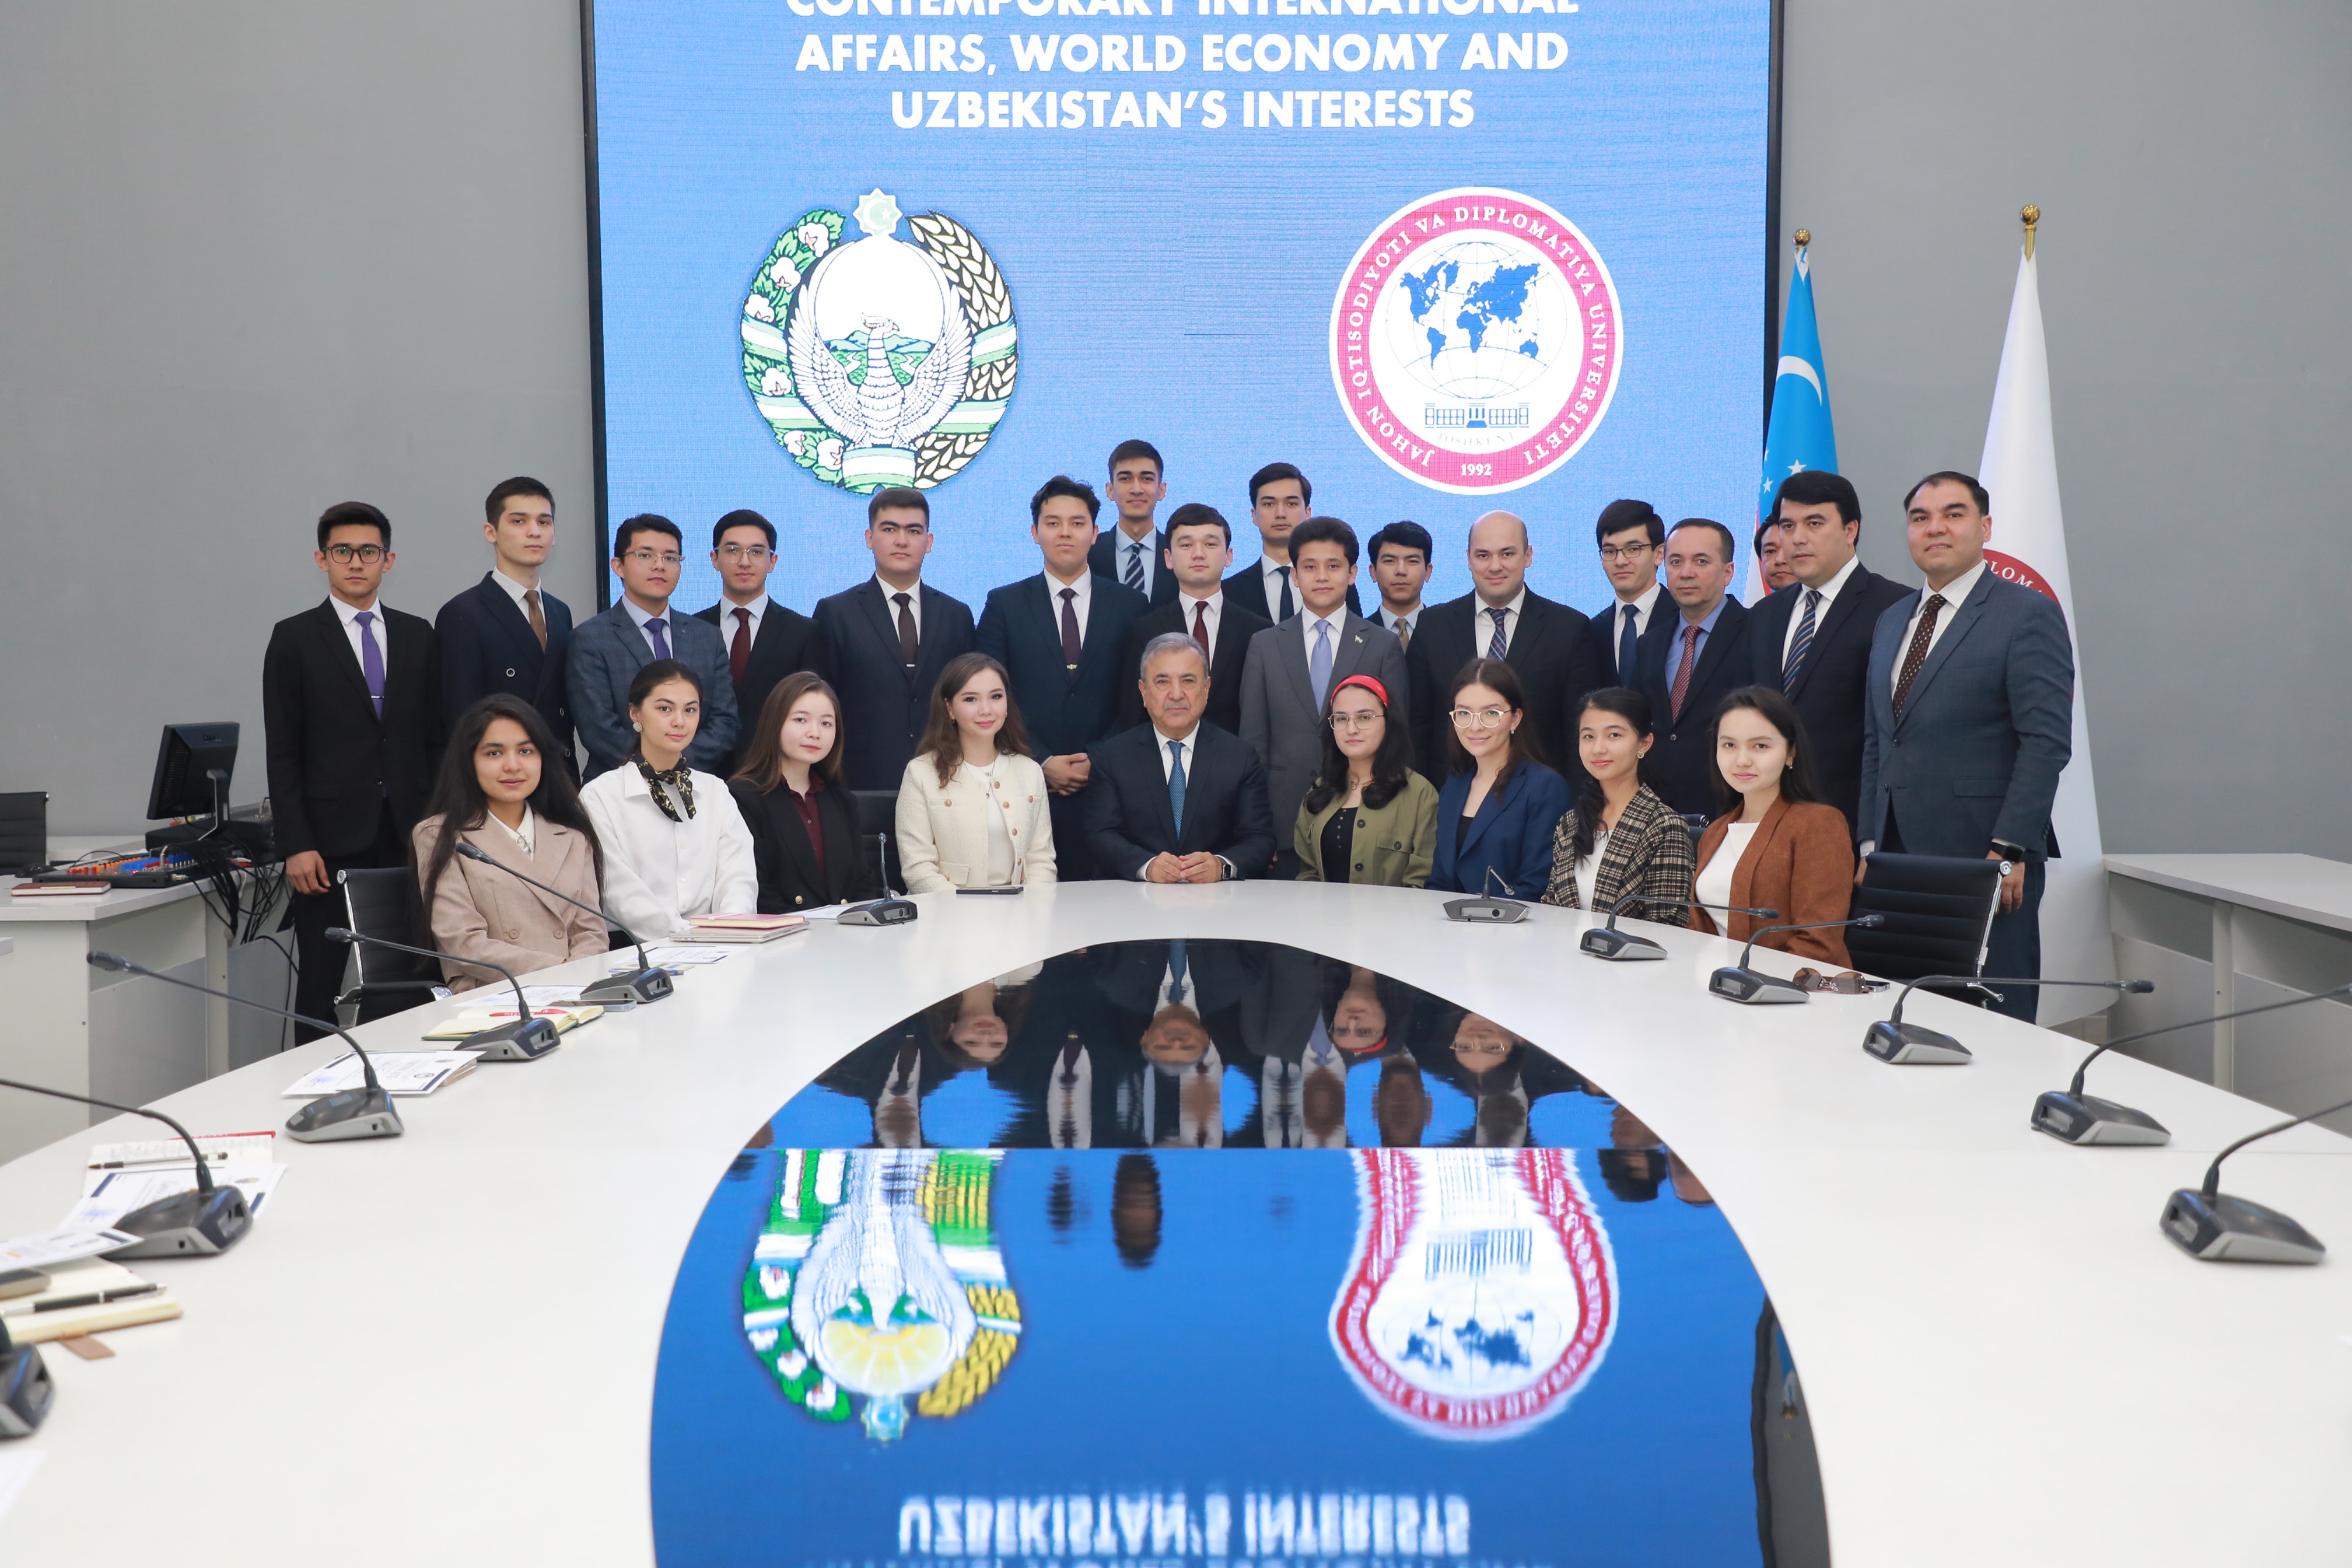 Завершился ректорский курс “Современные международные отношения, мировая экономика и интересы Узбекистана”